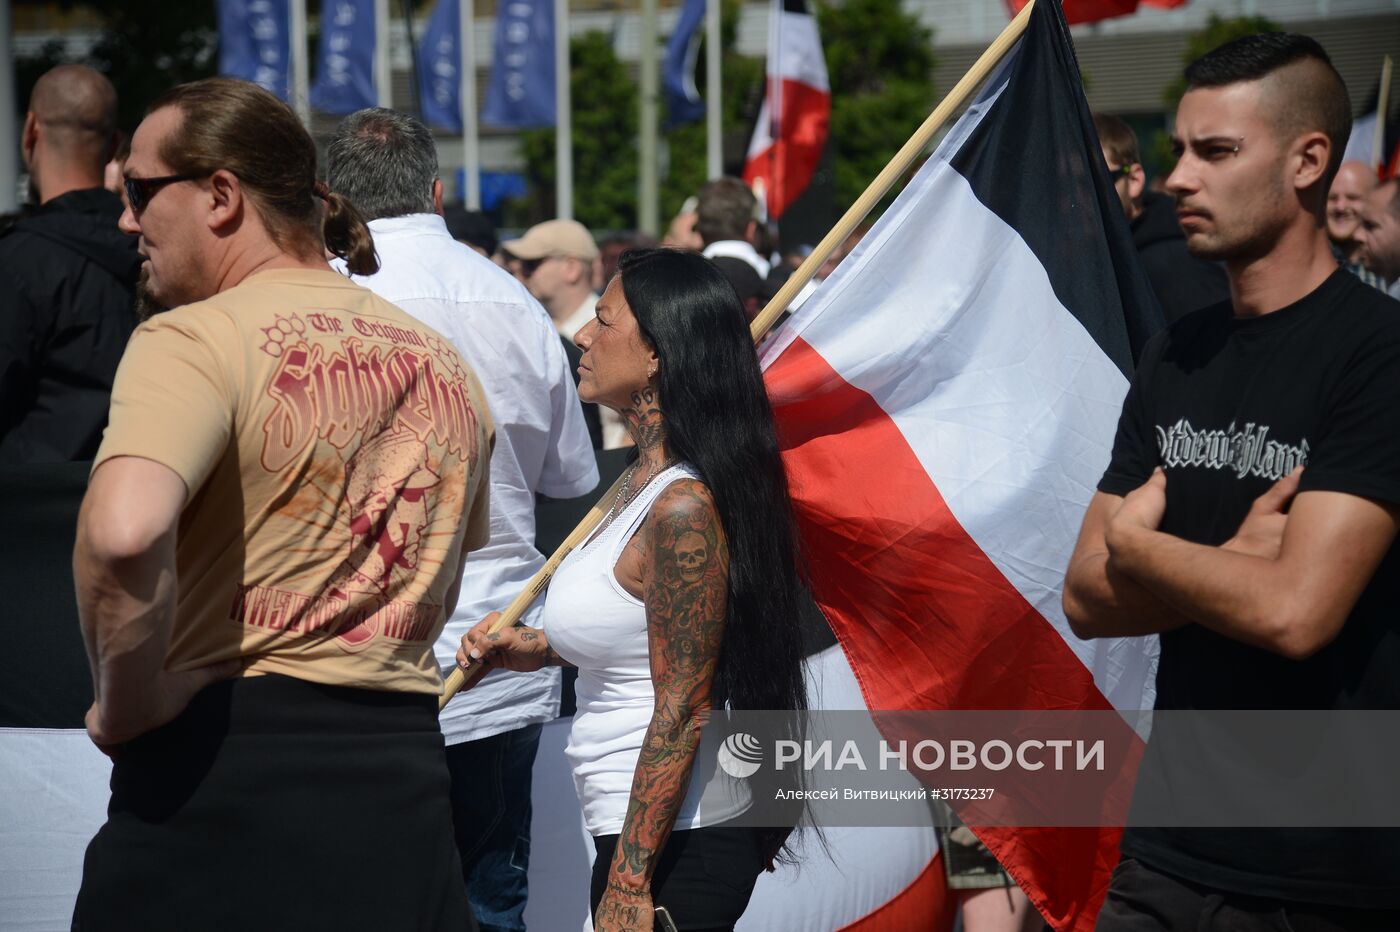 Акция неонацистов в Берлине в годовщину смерти Р. Гесса